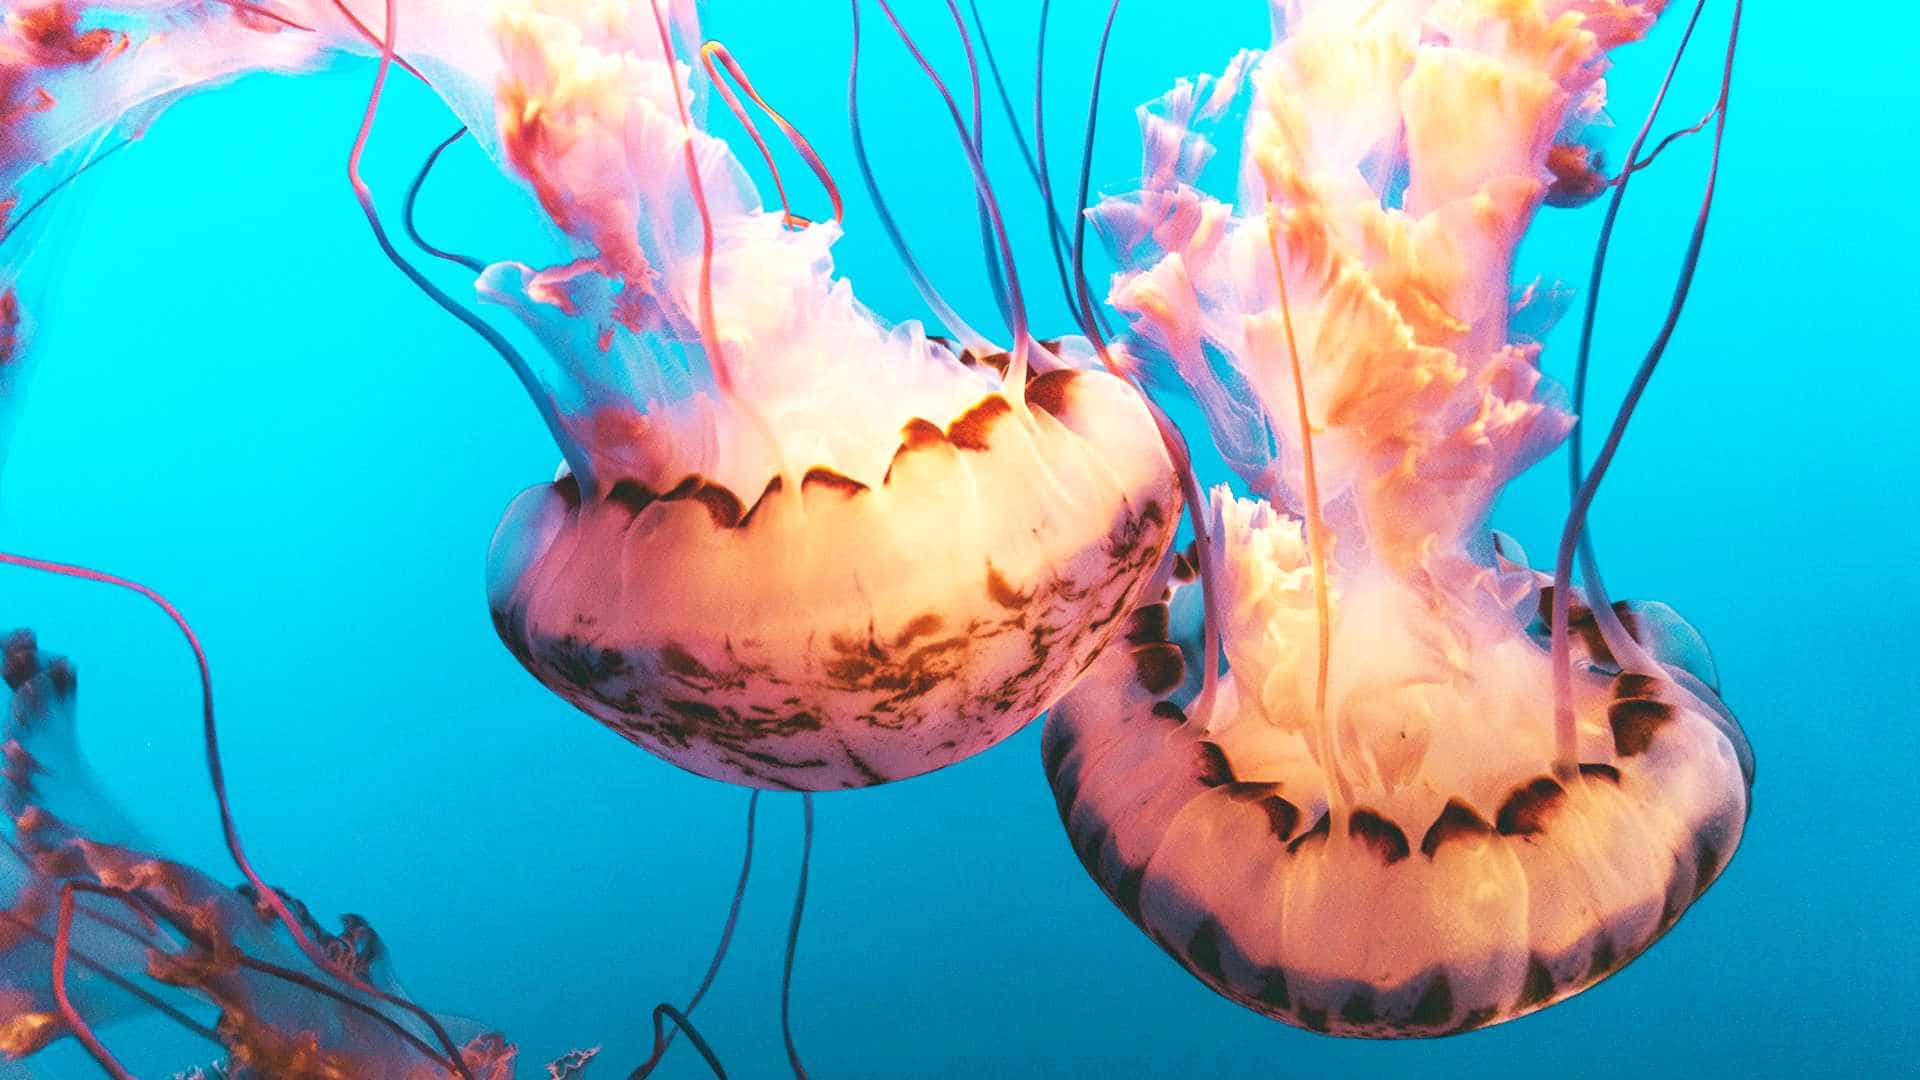 Pair of jellyfish underwater.